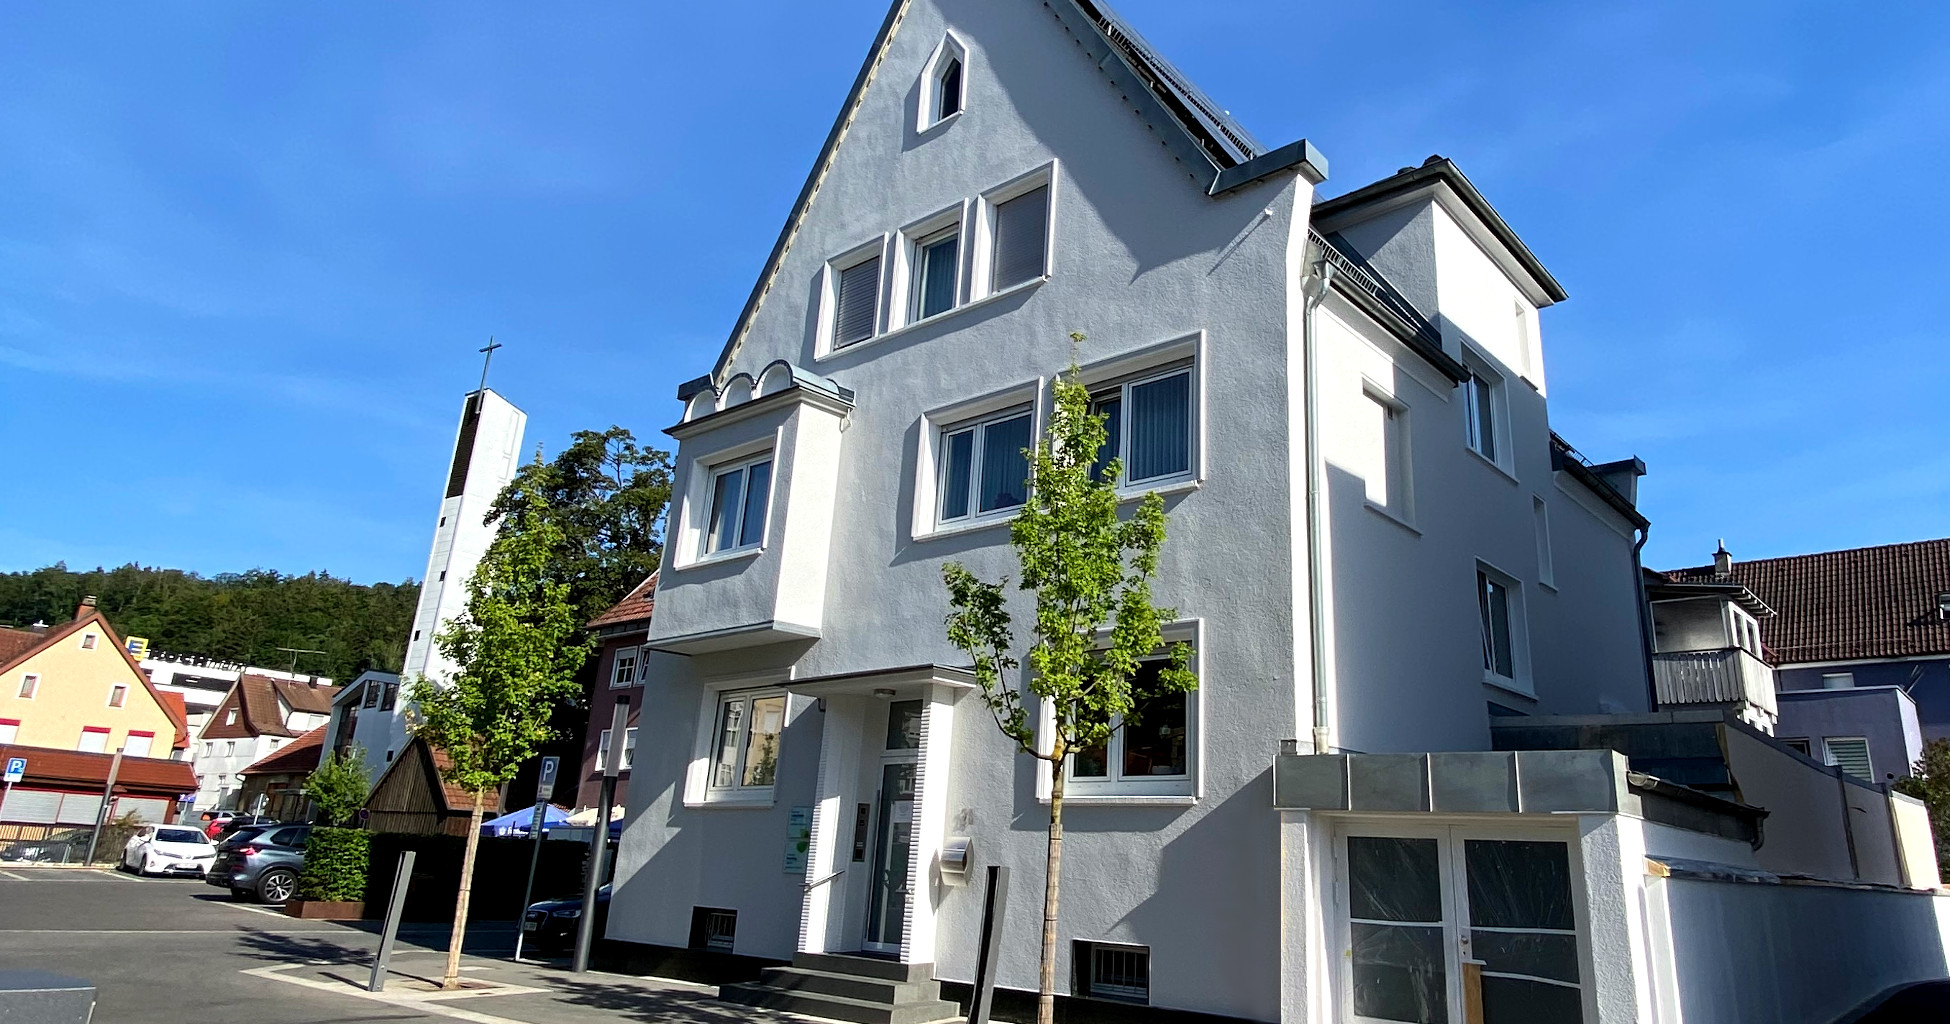 Zahnarztpraxis Dr. Heider: Außenansicht des Gebäudes Am Markt 26 in Albstadt-Tailfingen